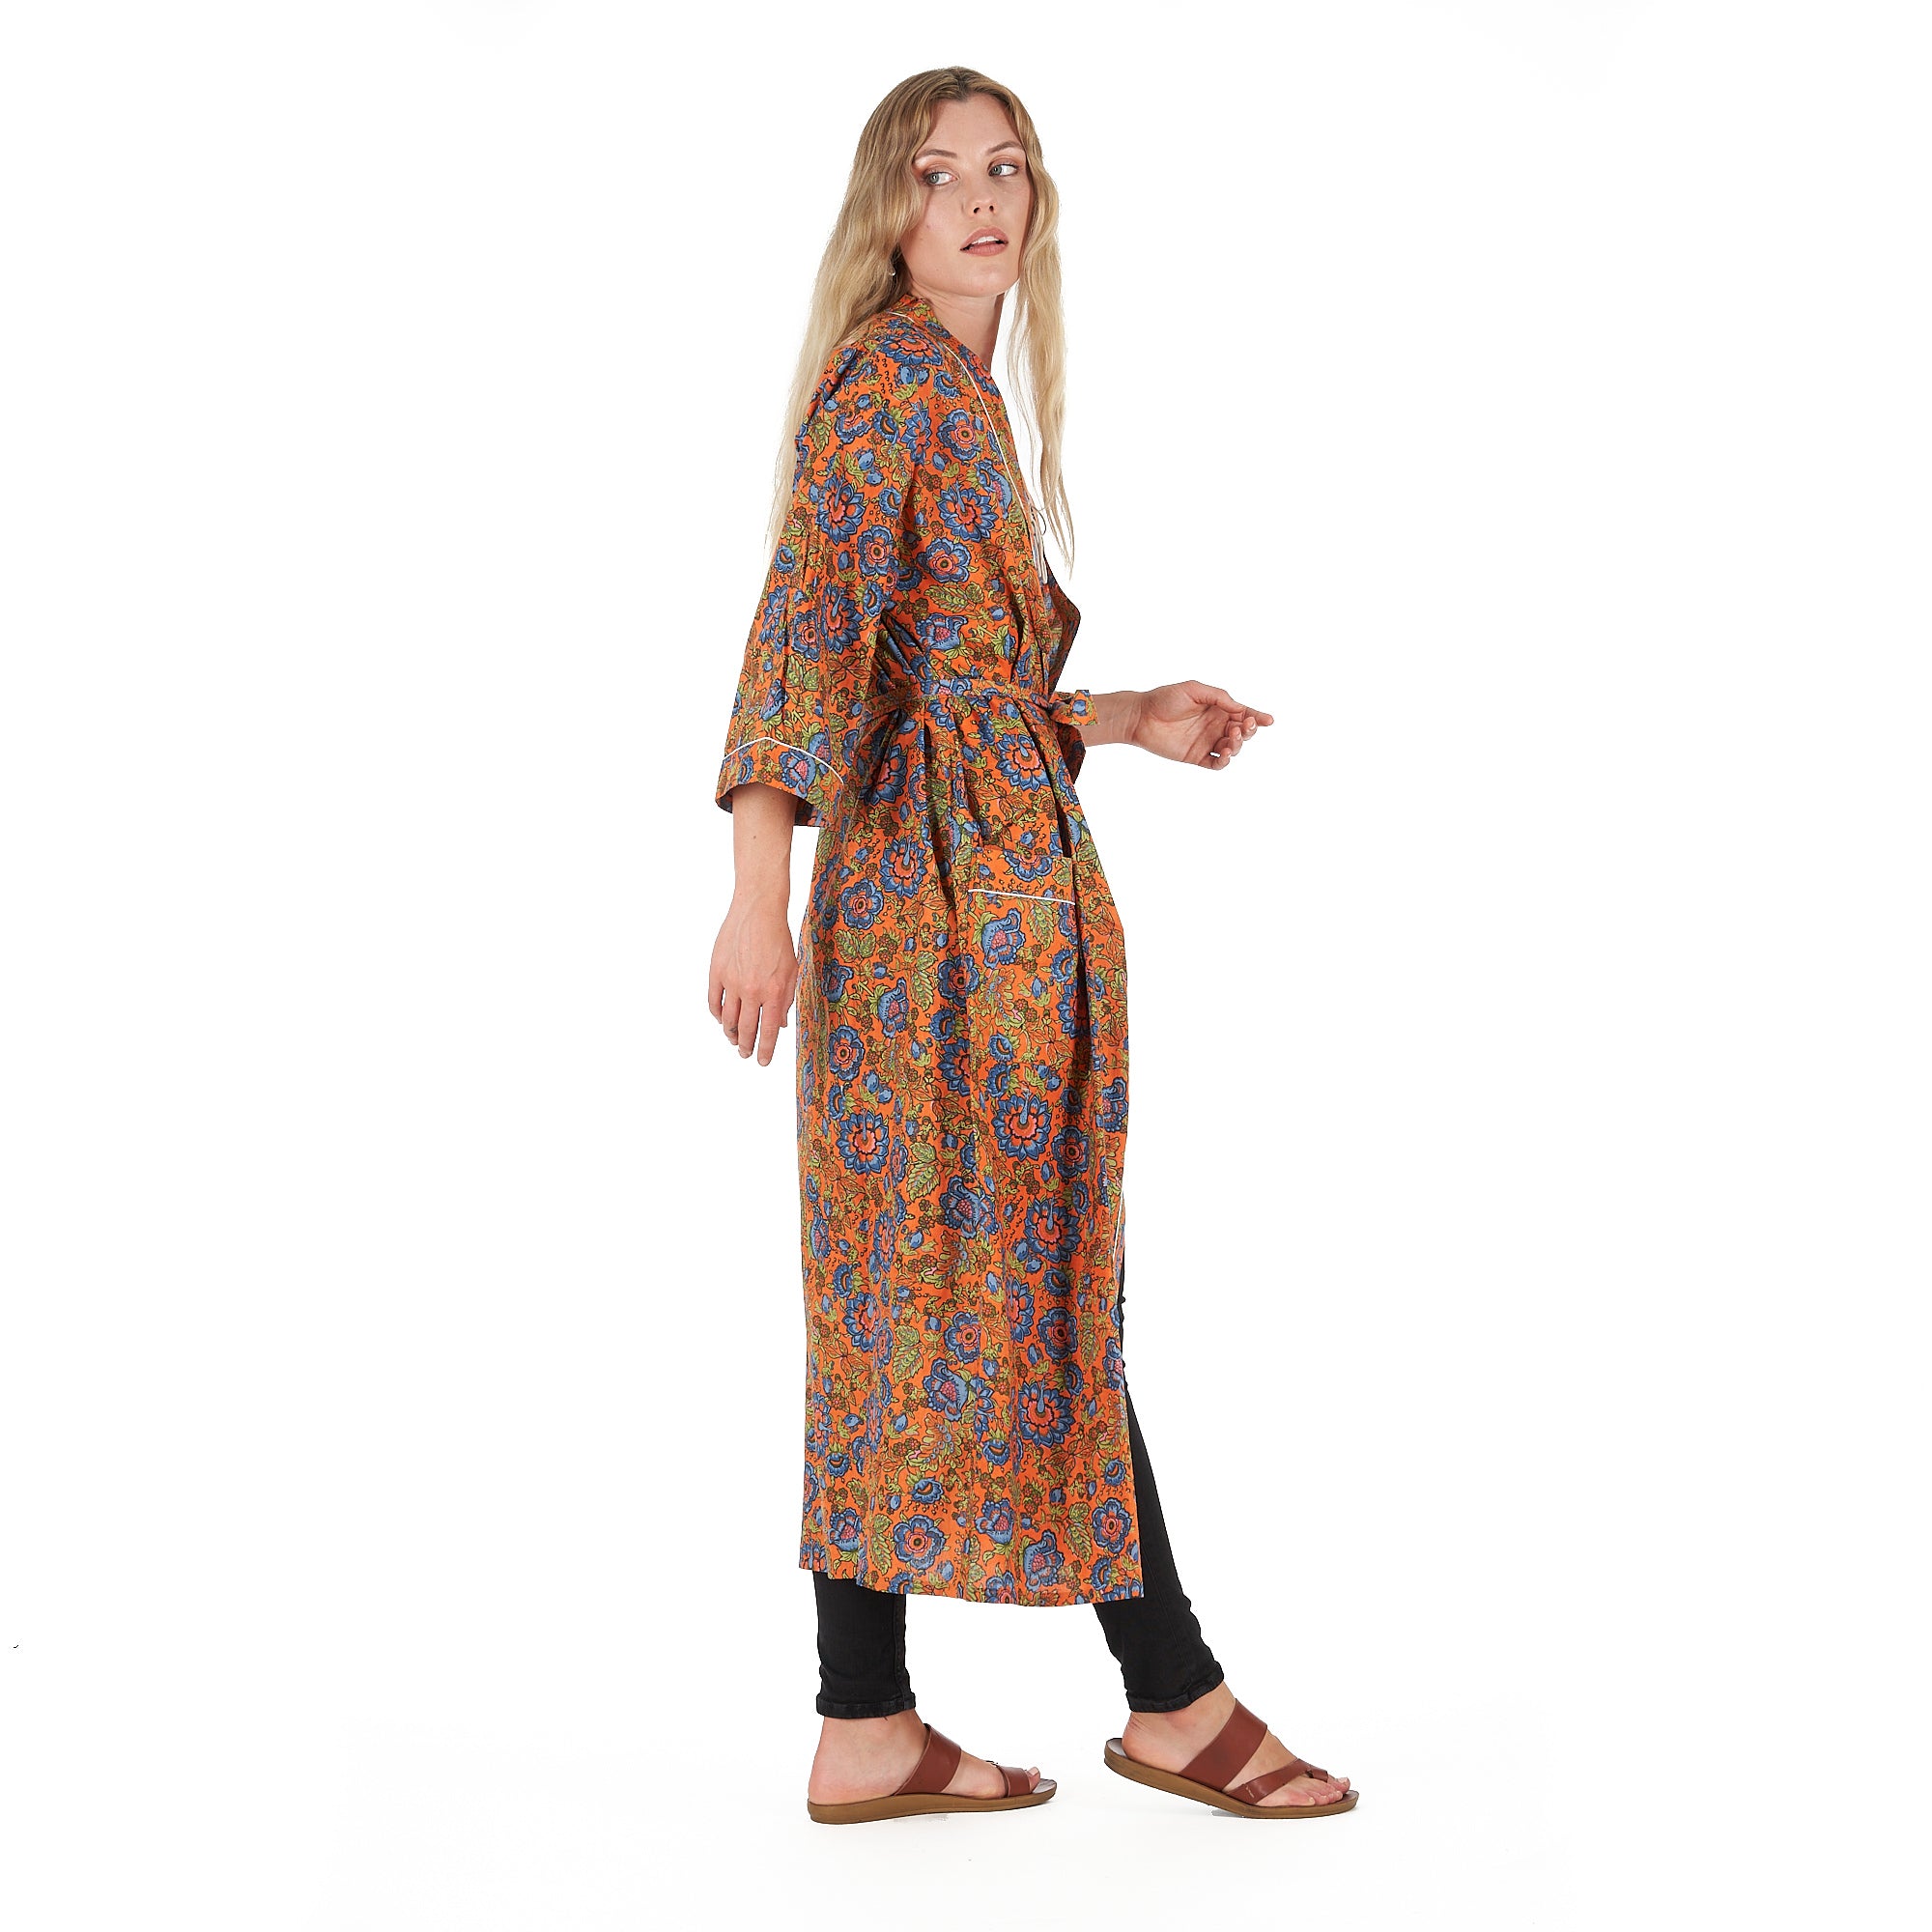 'Lounge In Style' 100% Cotton Kimono Robe